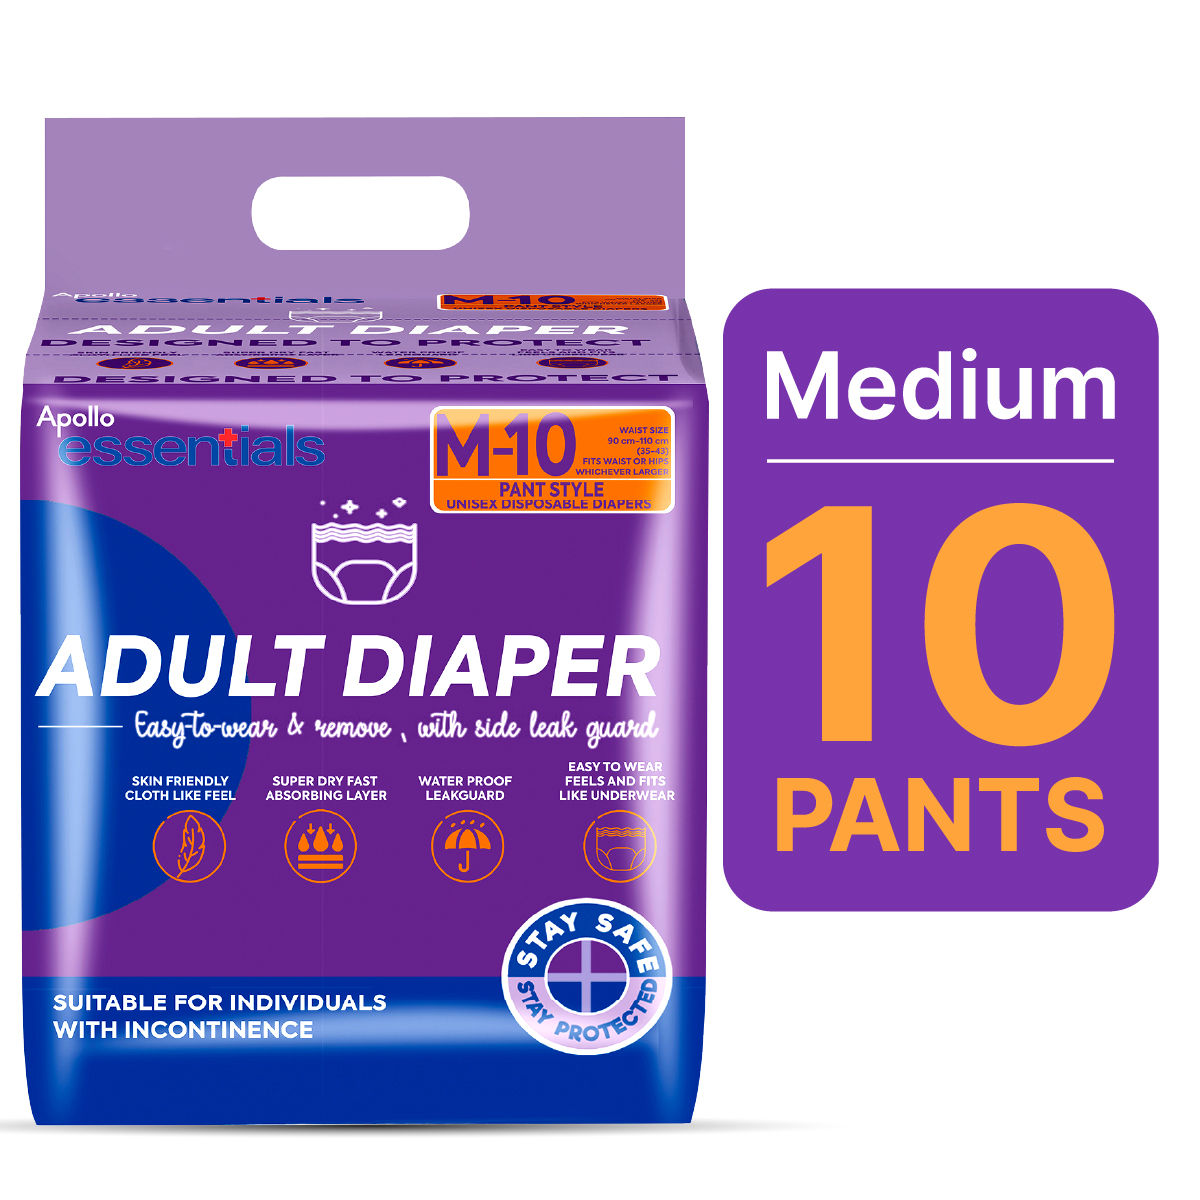 Buy Apollo Essentials Adult Diaper Pant Style Unisex Medium, 10 Count Online